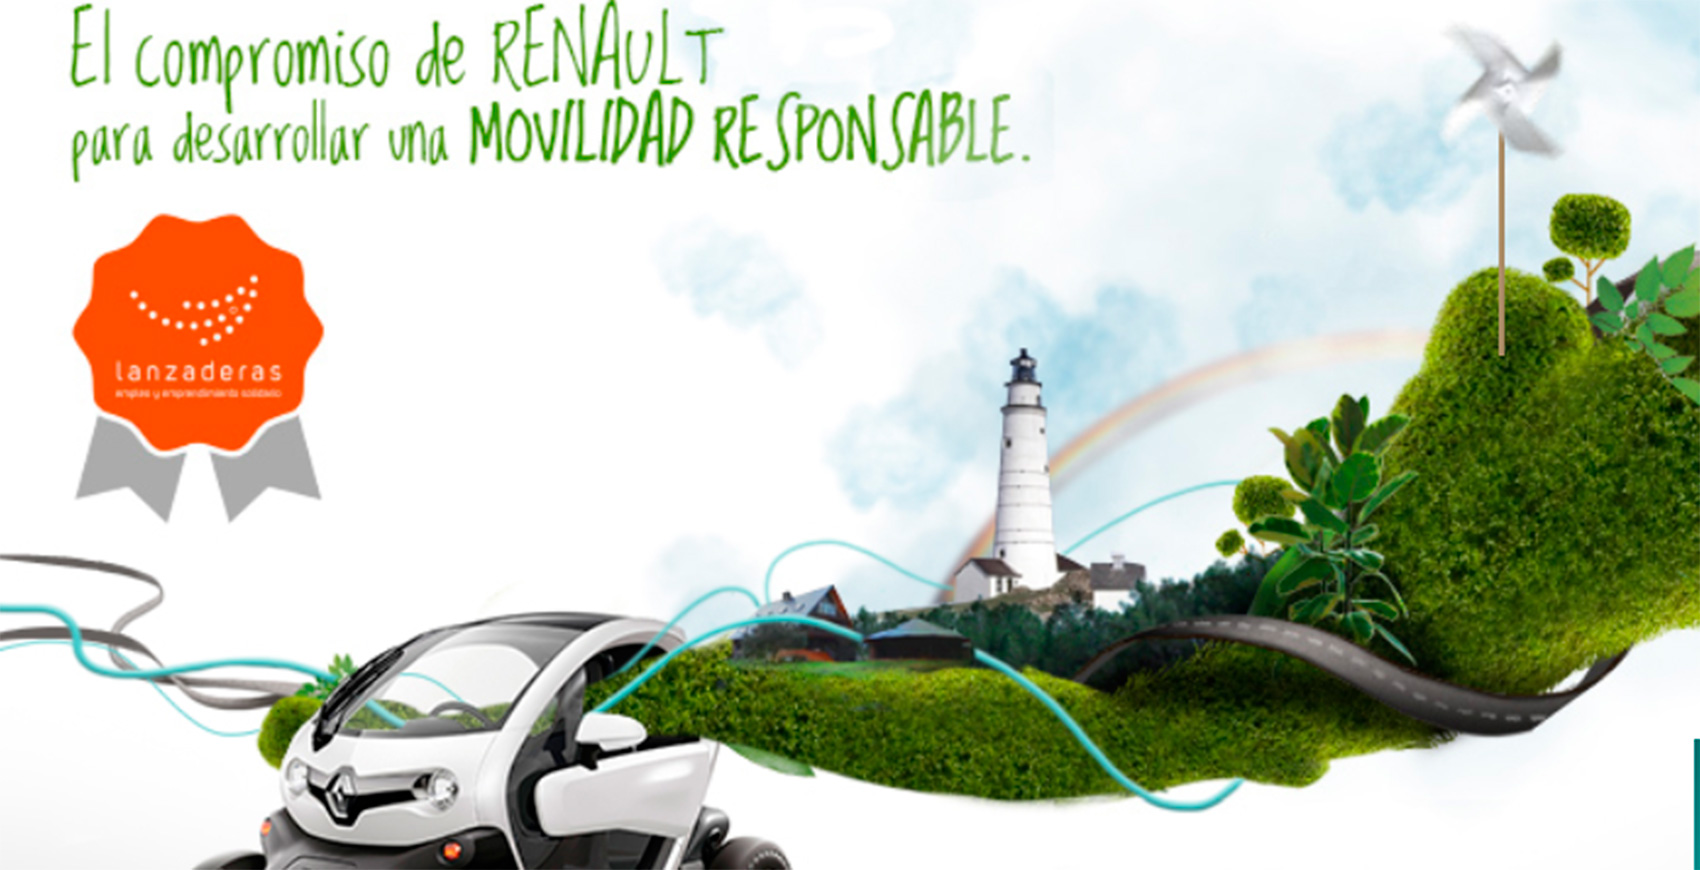 La apuesta de la Fundacin Renault es construir una movilidad sostenible al alcance de todos, que sea un vector de progreso para la sociedad...